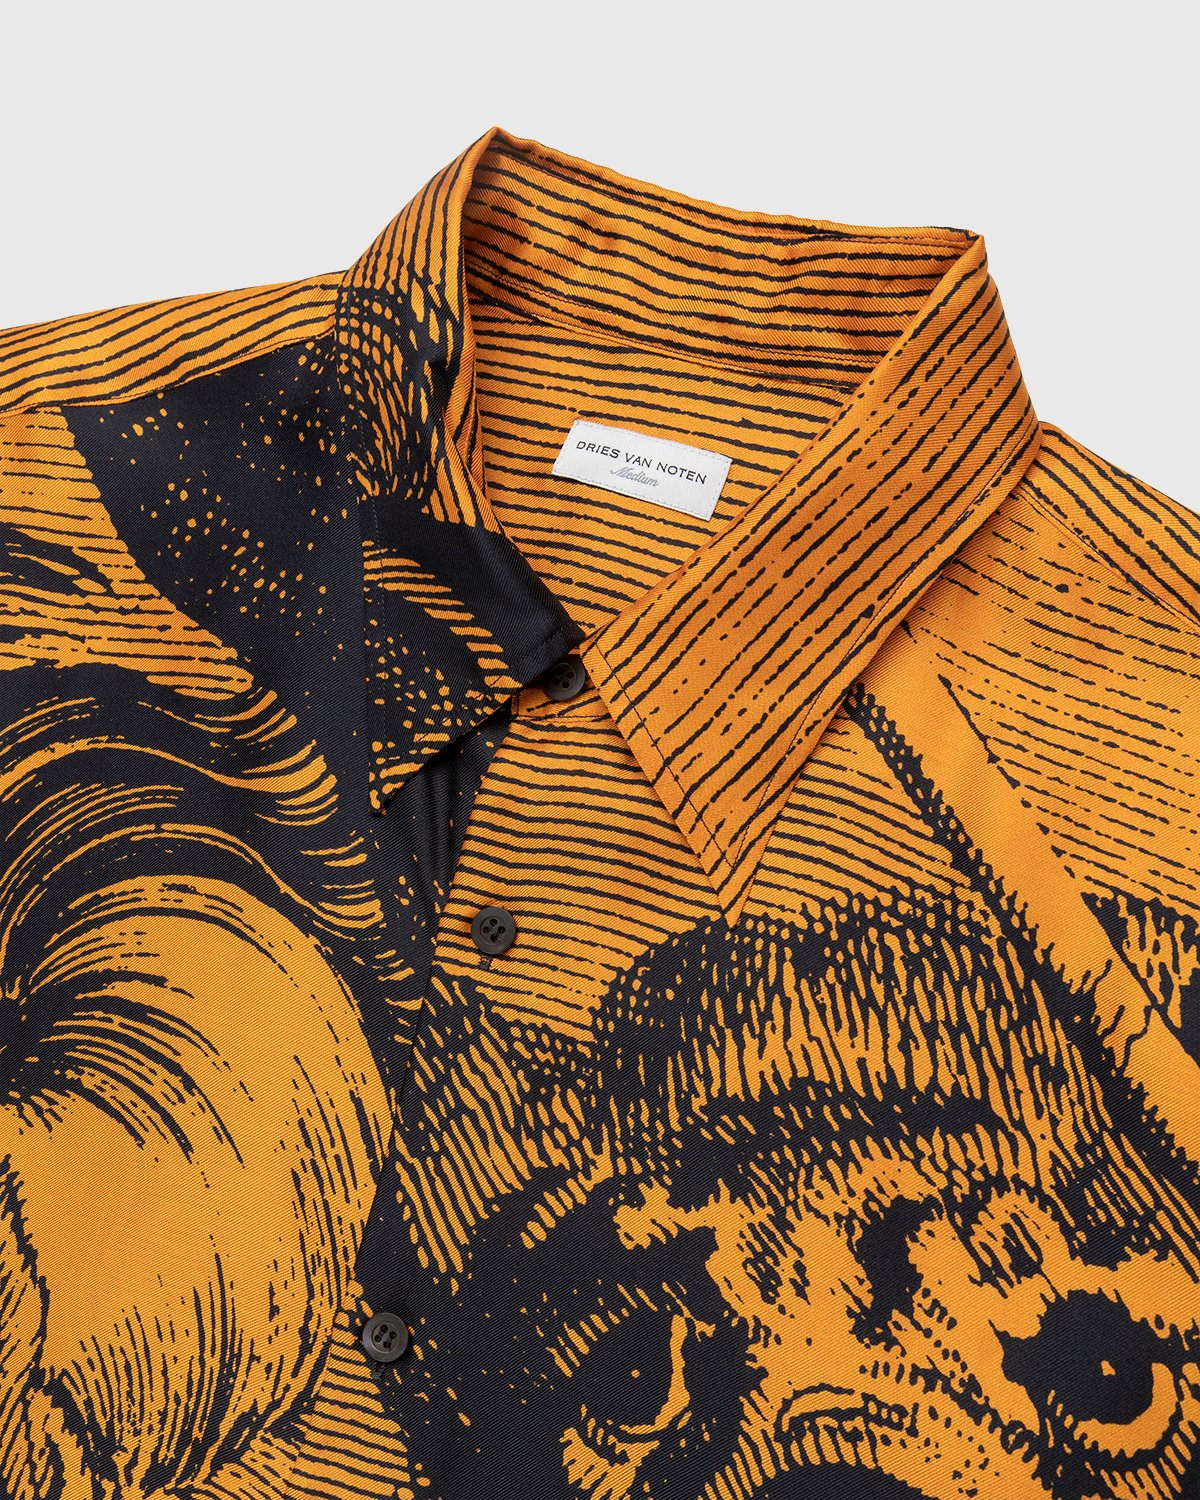 Dries van Noten - Cassidye Shirt Orange - Clothing - Orange - Image 5